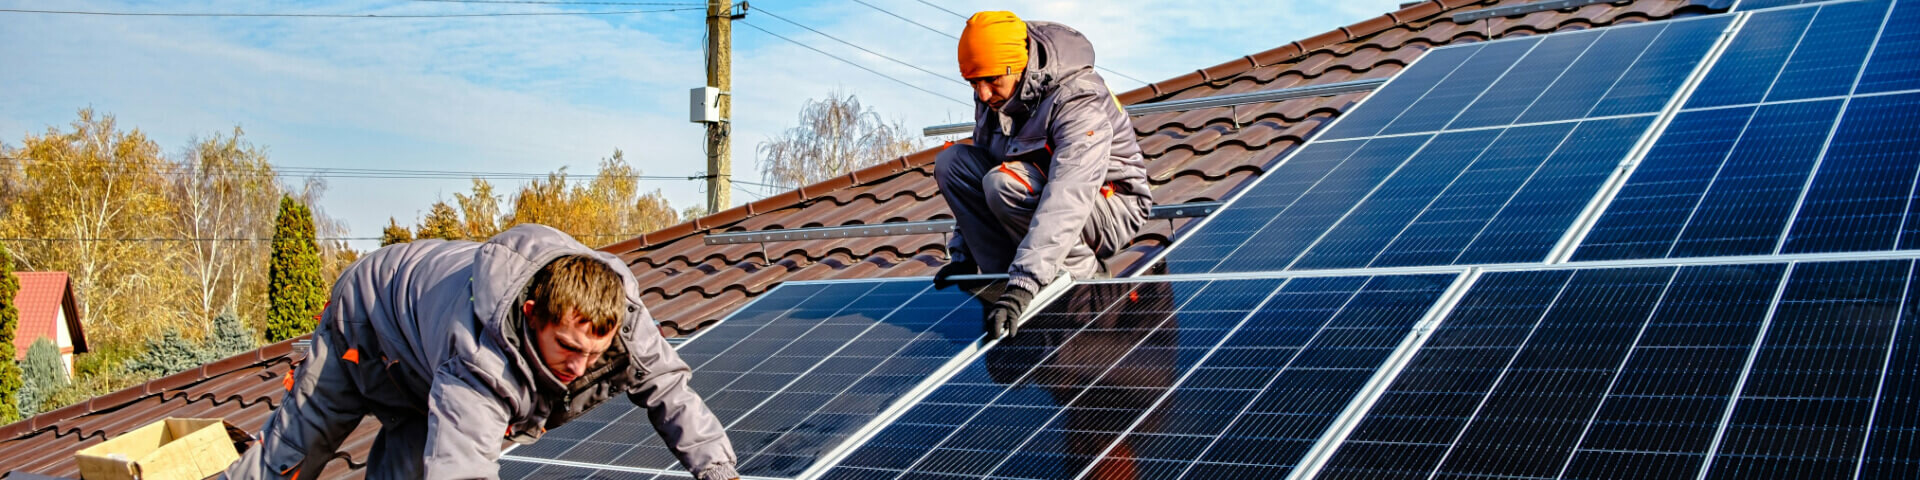 Zwei Männer arbeiten auf einem Hausdach und installieren Photovoltaik-Module.